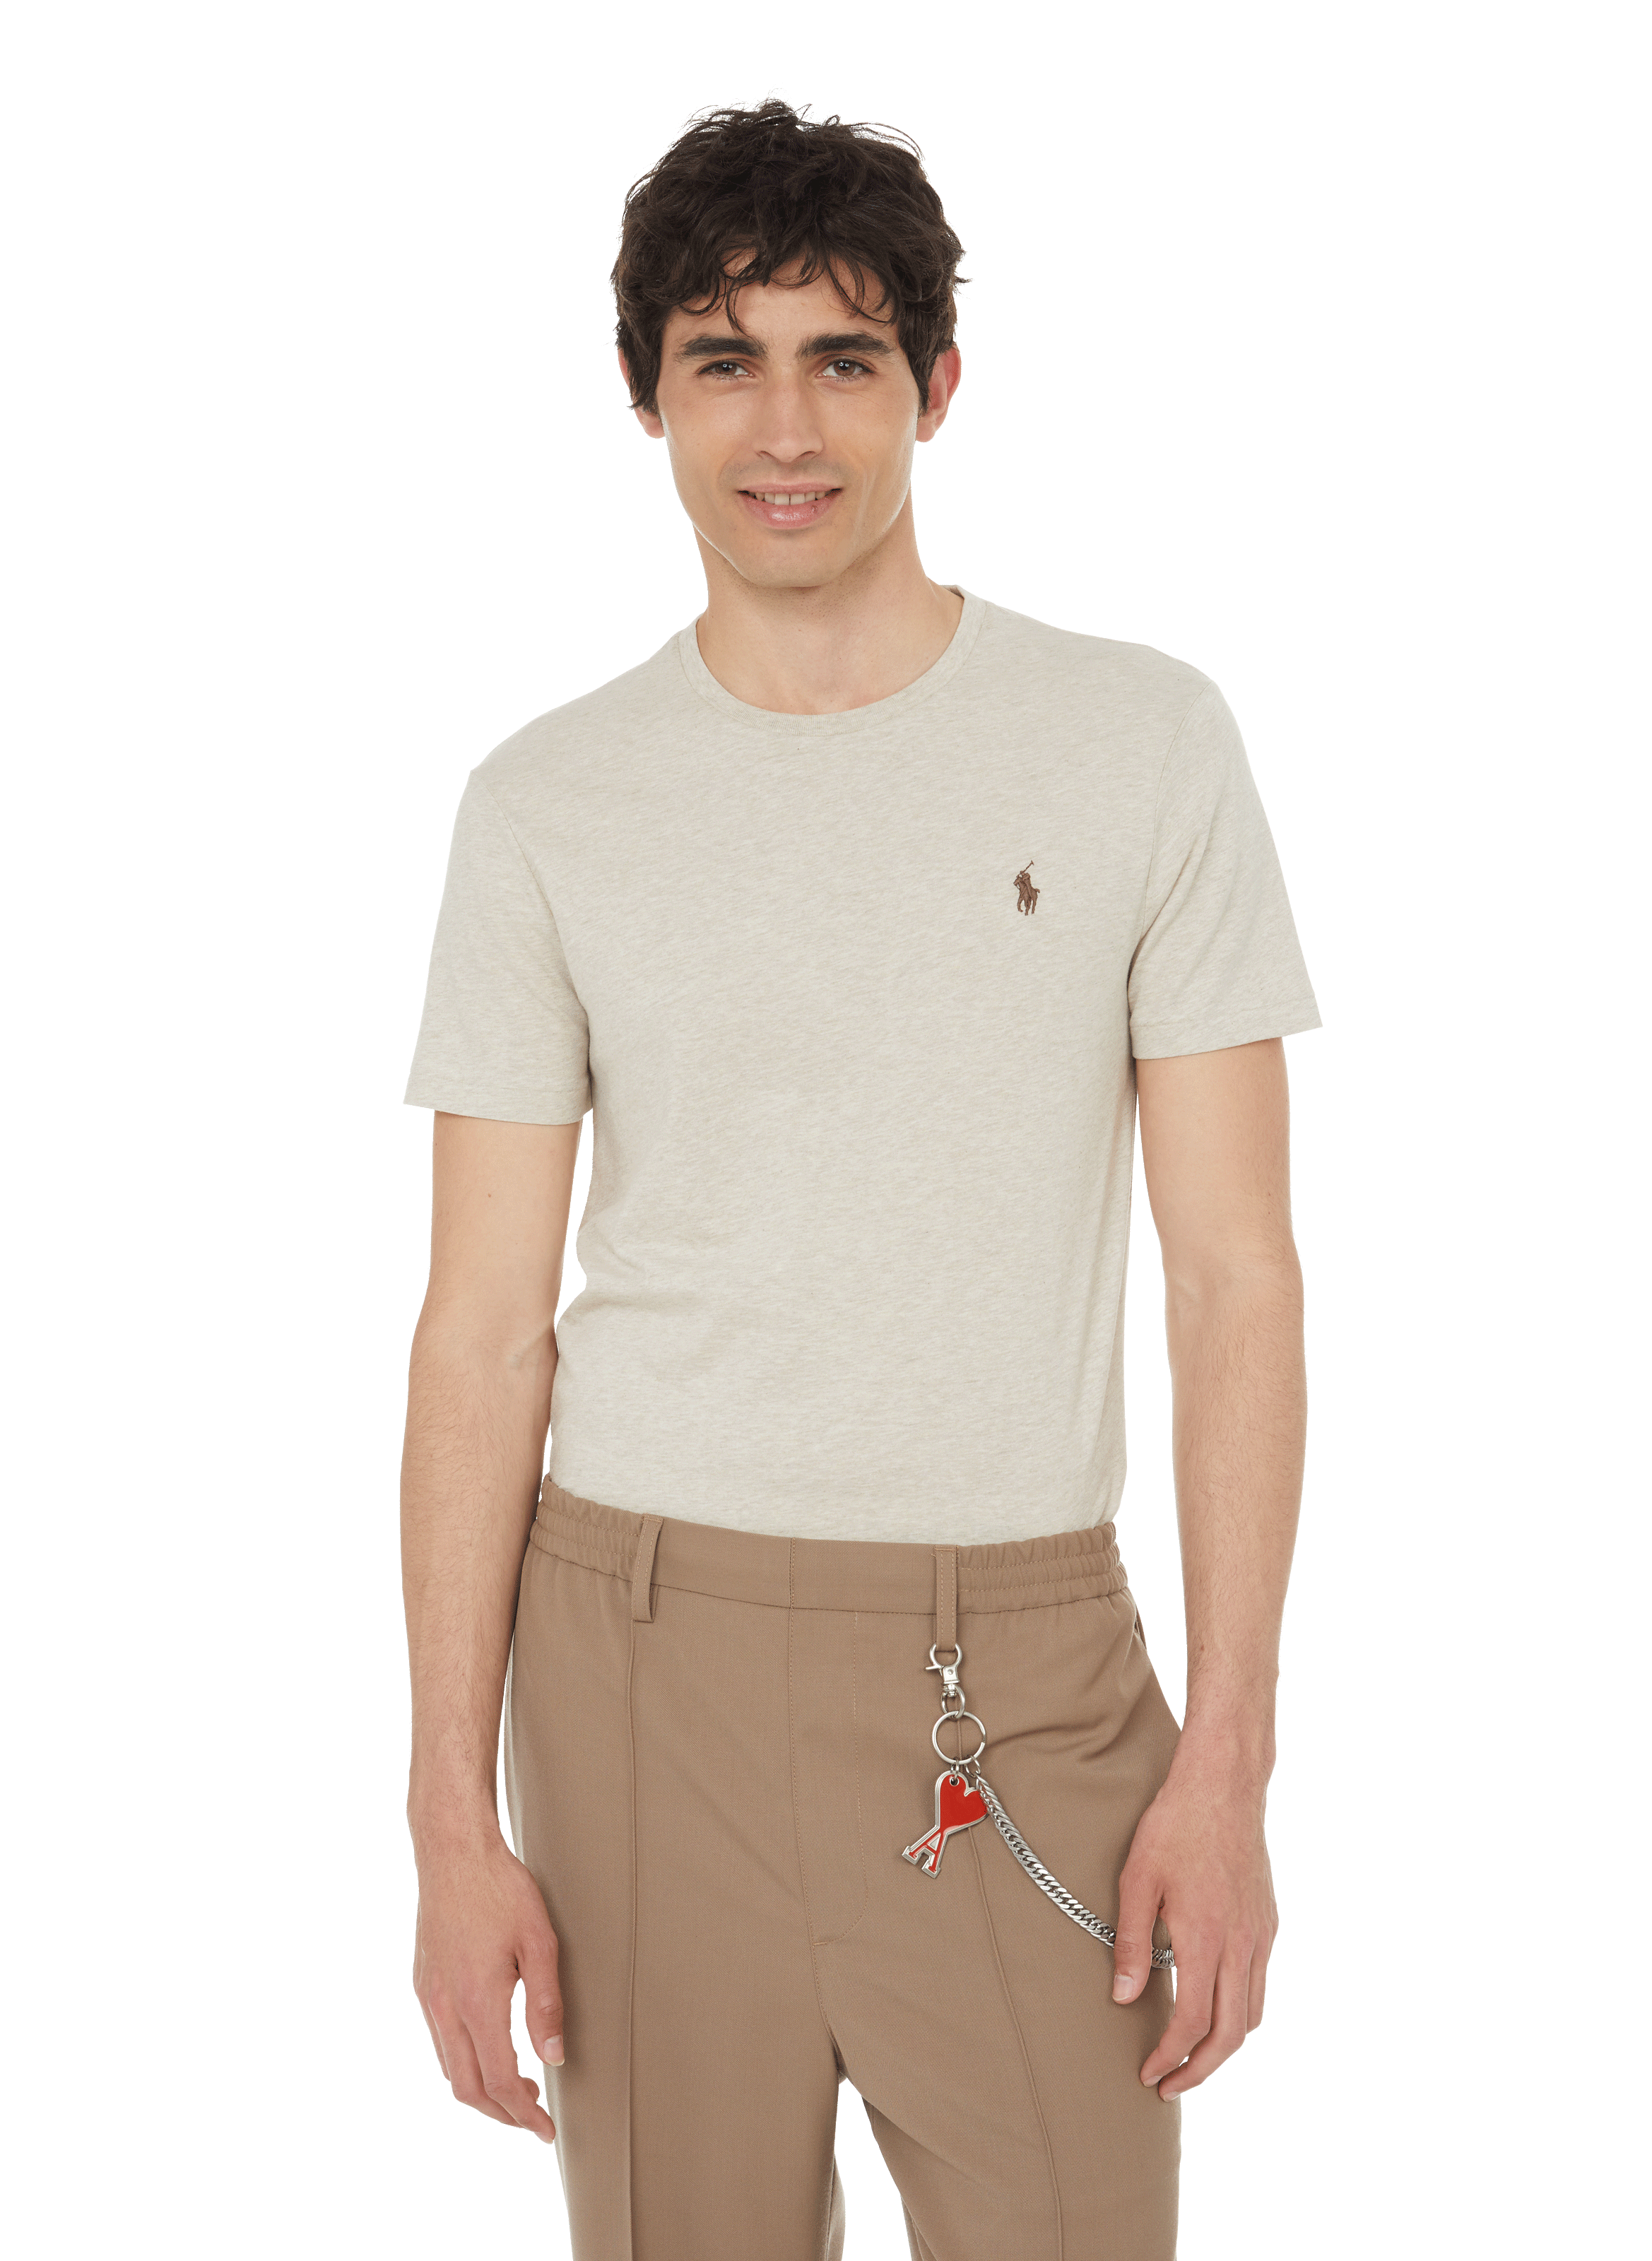 Printemps.com Homme Vêtements Tops & T-shirts T-shirts Polos Polo en coton 